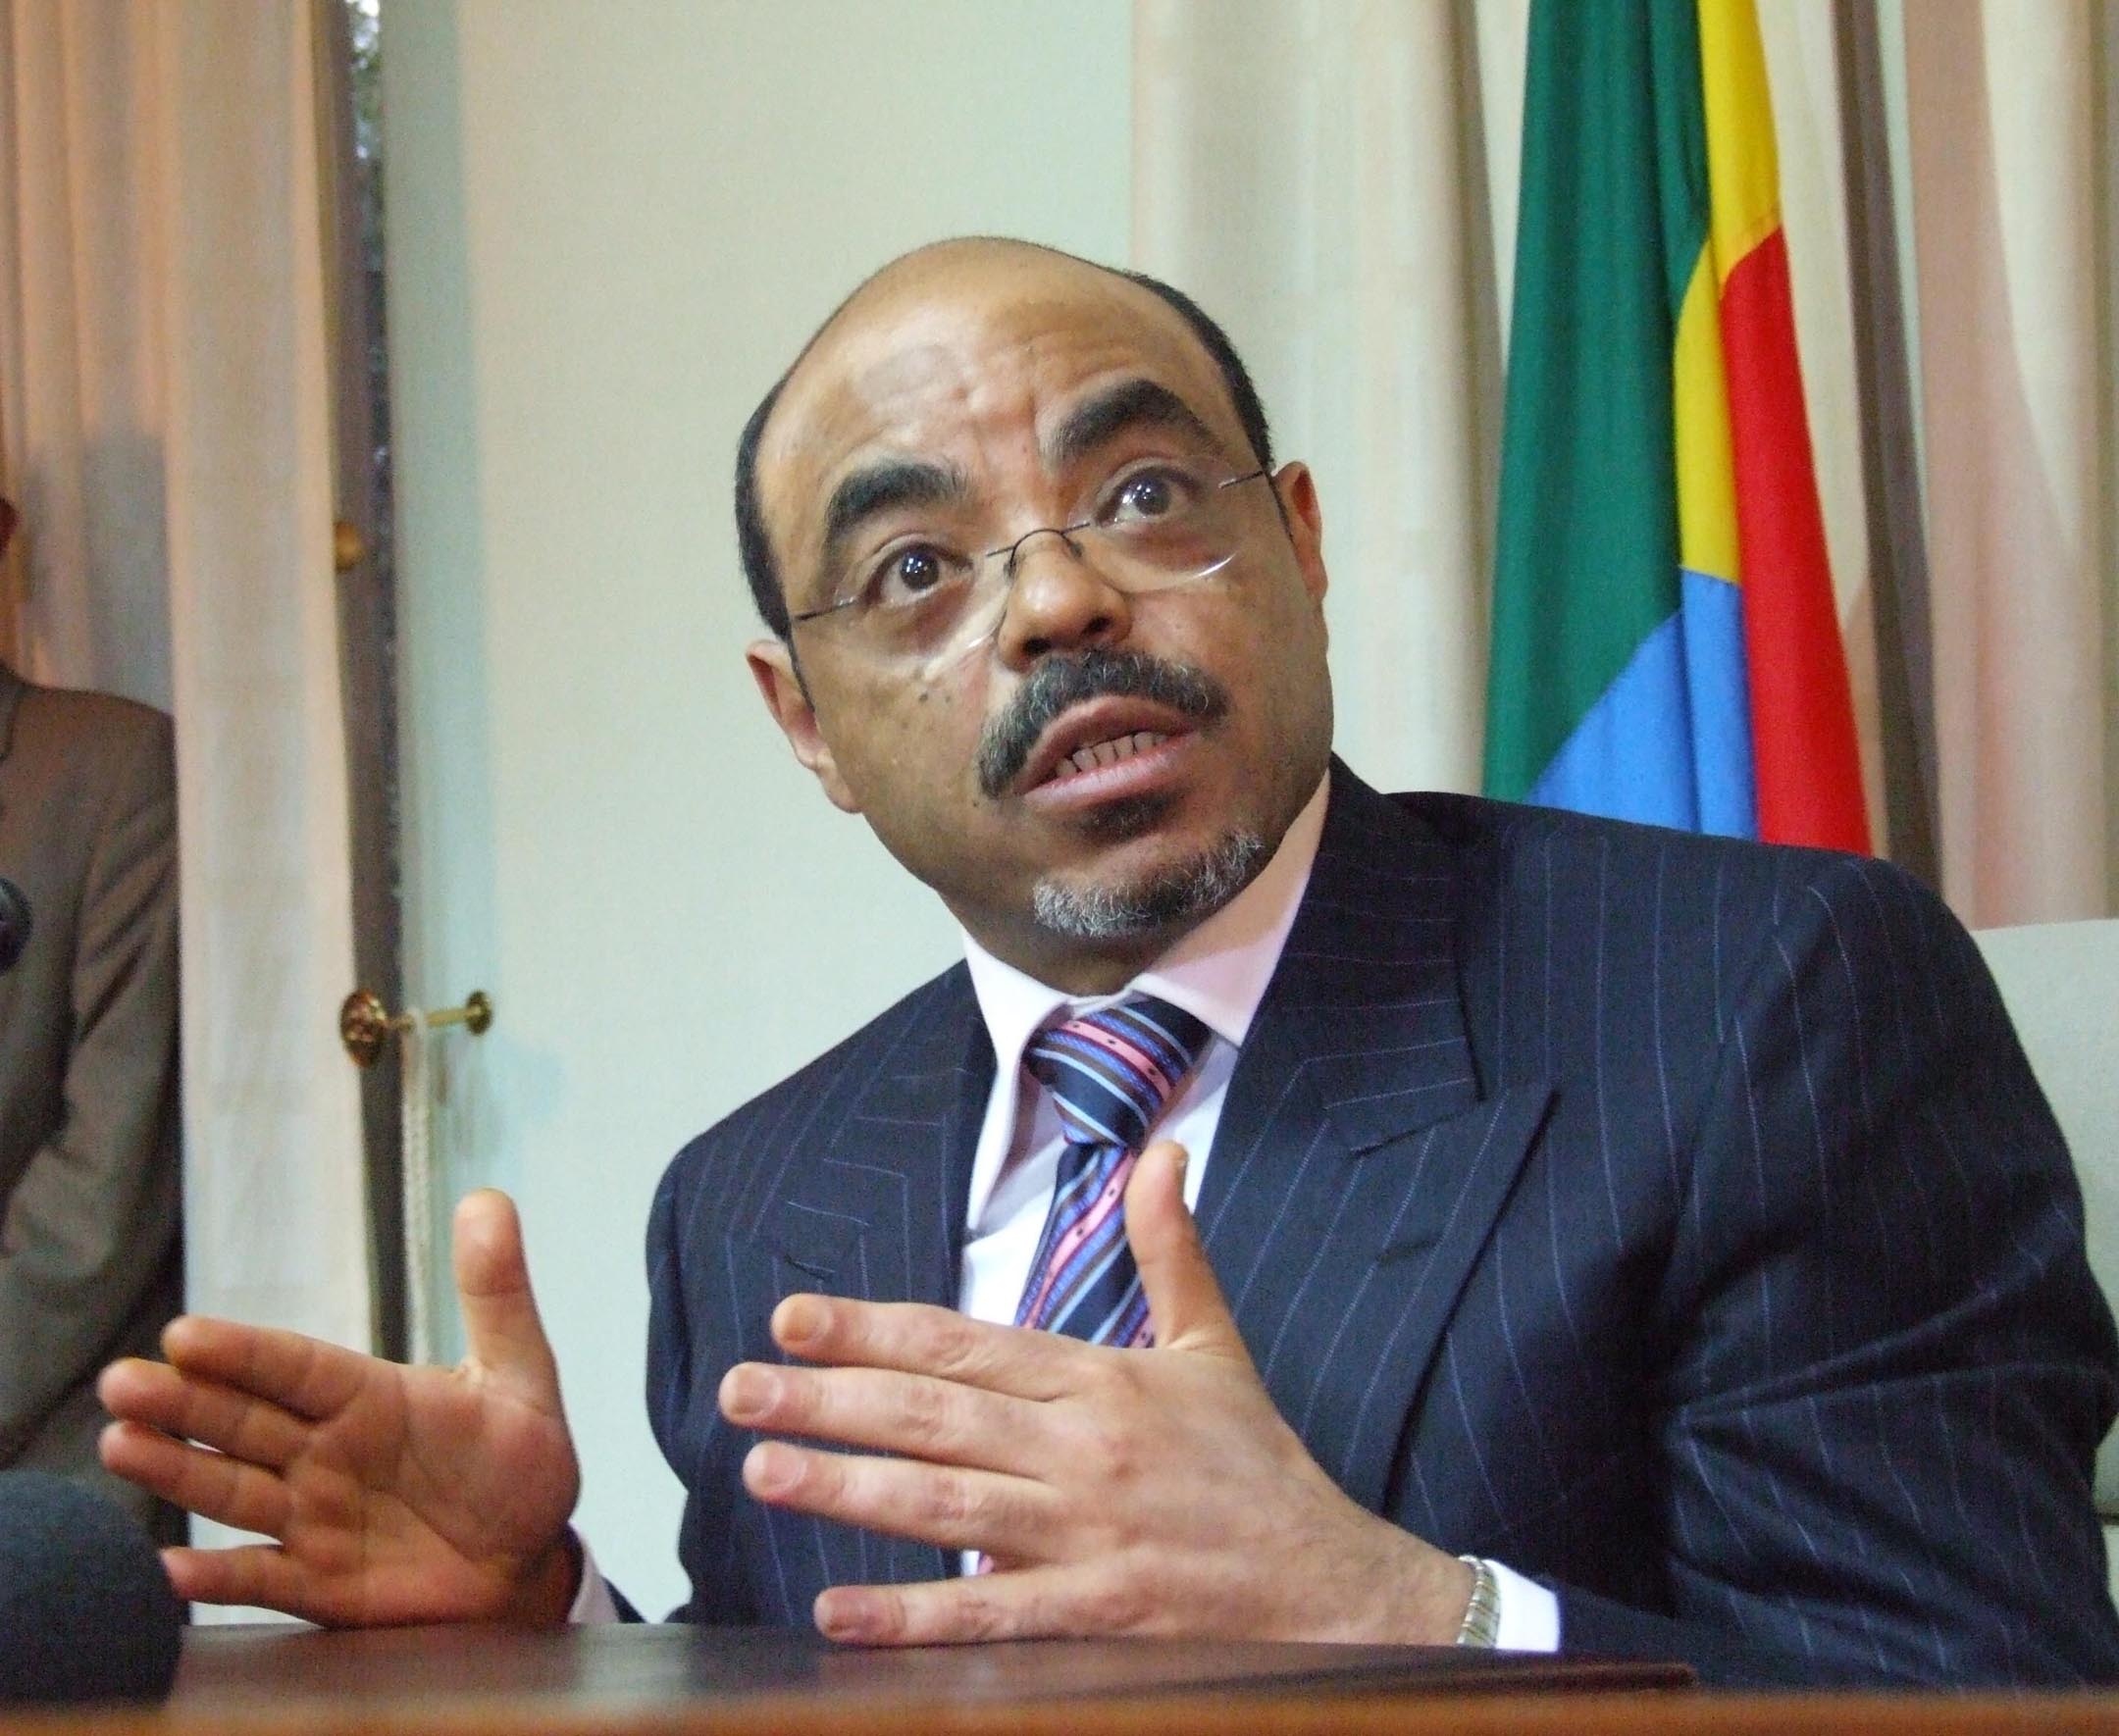 Johan Persson, Martin Schibbye, Meles Zenawi, World Economic Forum, Etiopien, Fängelse, Besök, Carl Bildt